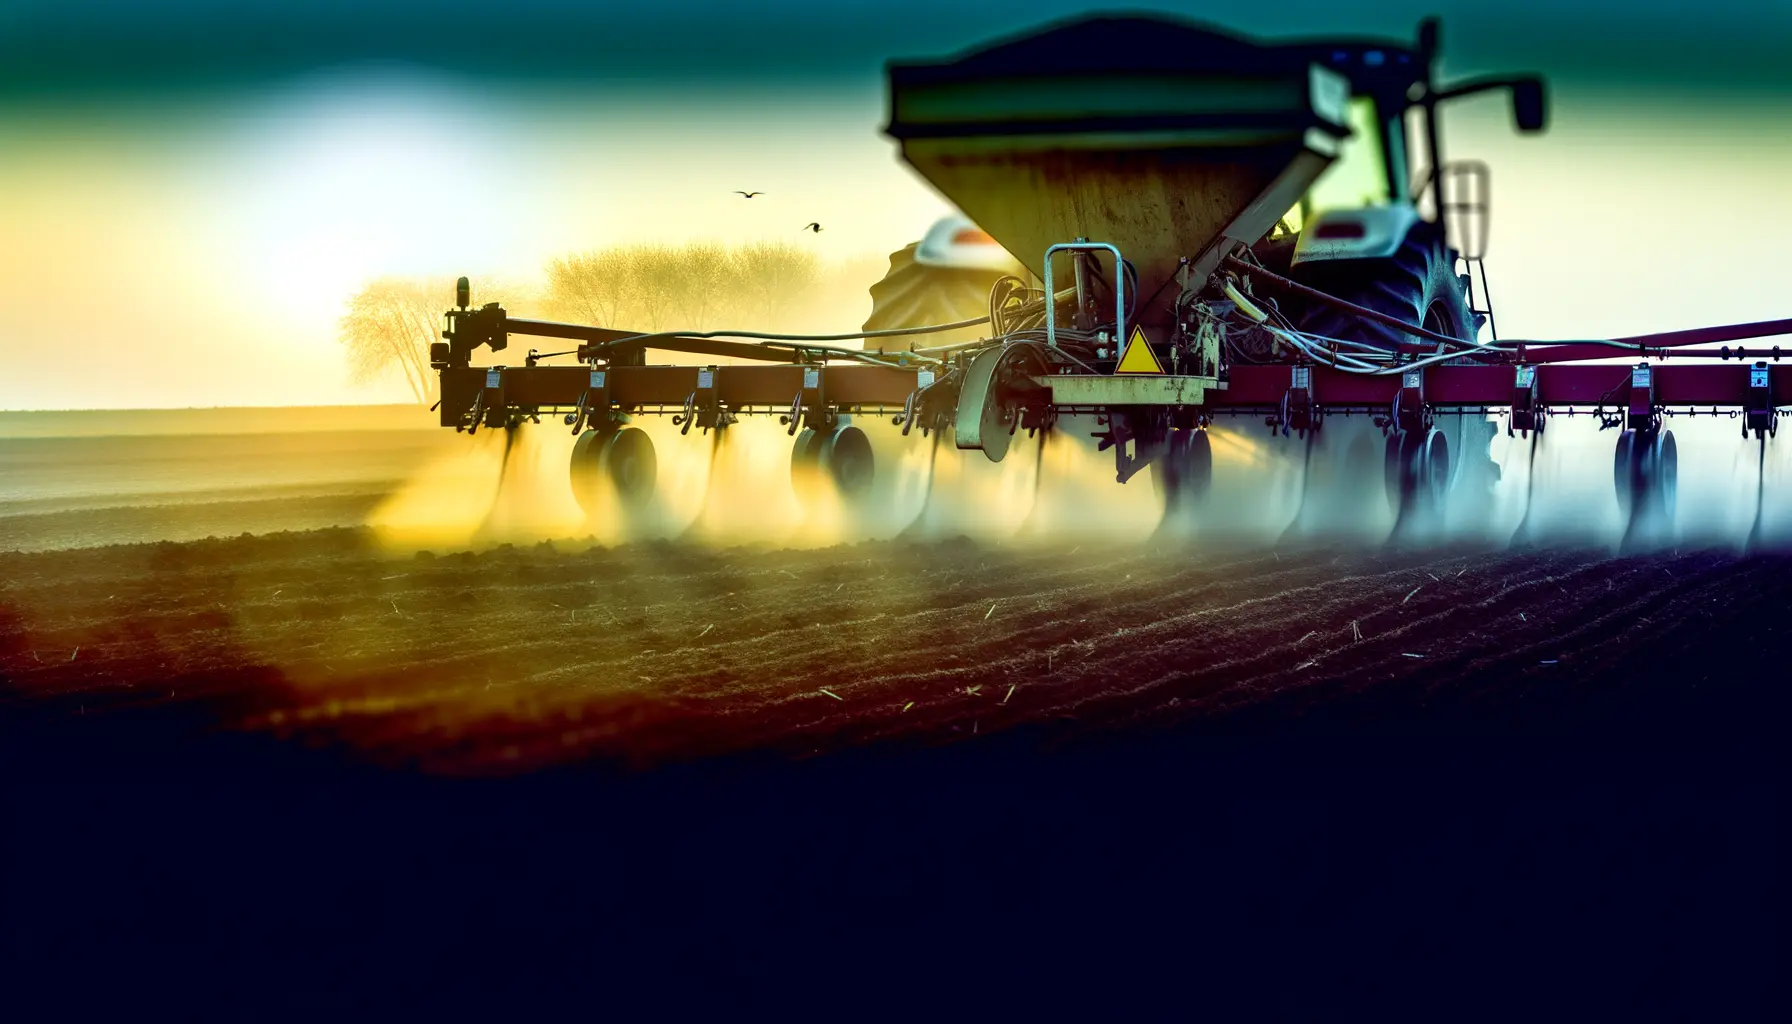 Landmaschine bei Sonnenaufgang symbolisiert Innovation in der Landwirtschaft